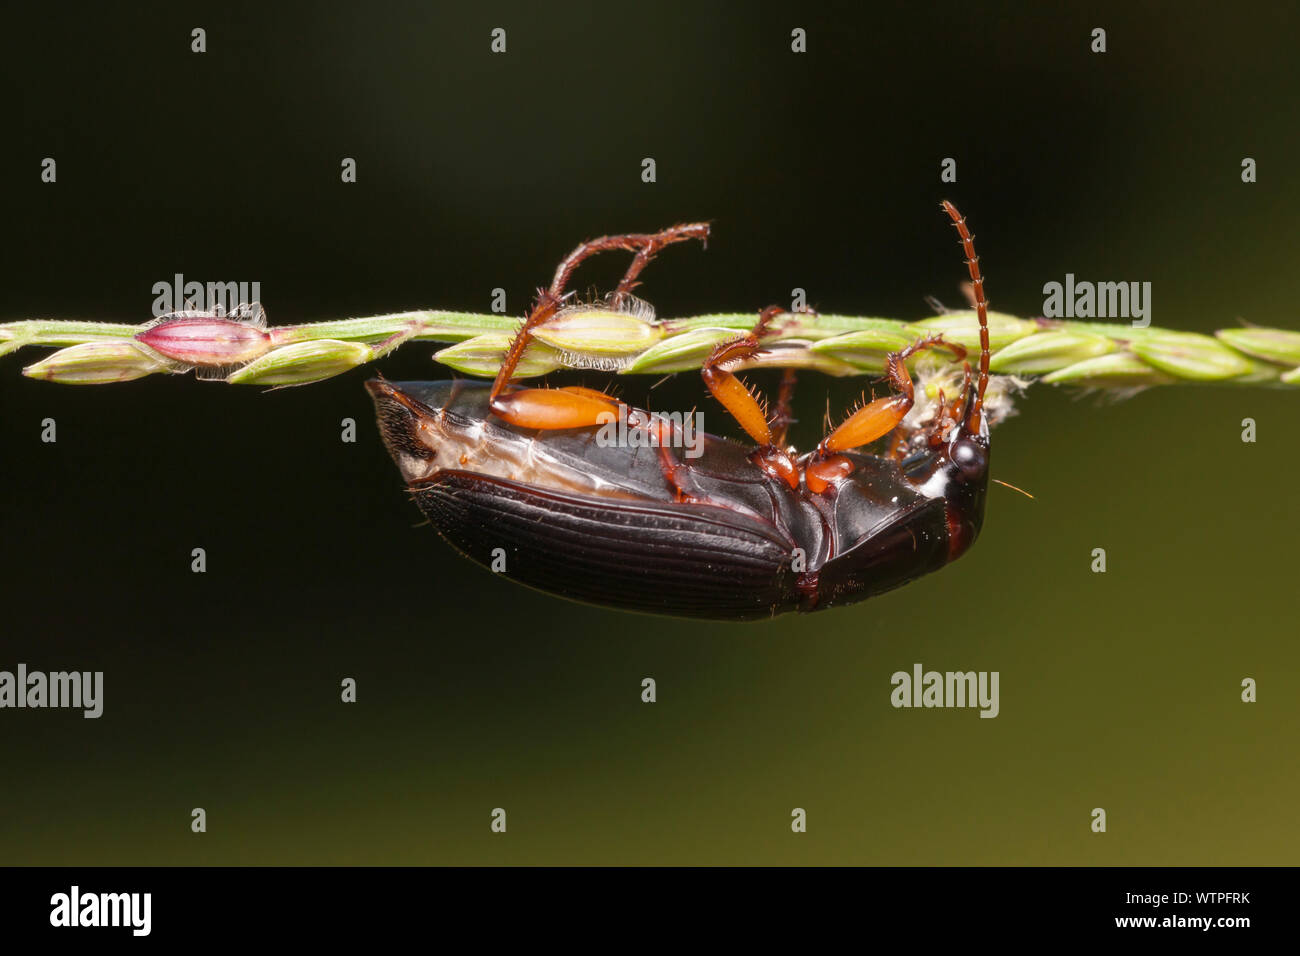 Ground Beetle (Pseudoophonus) Stock Photo